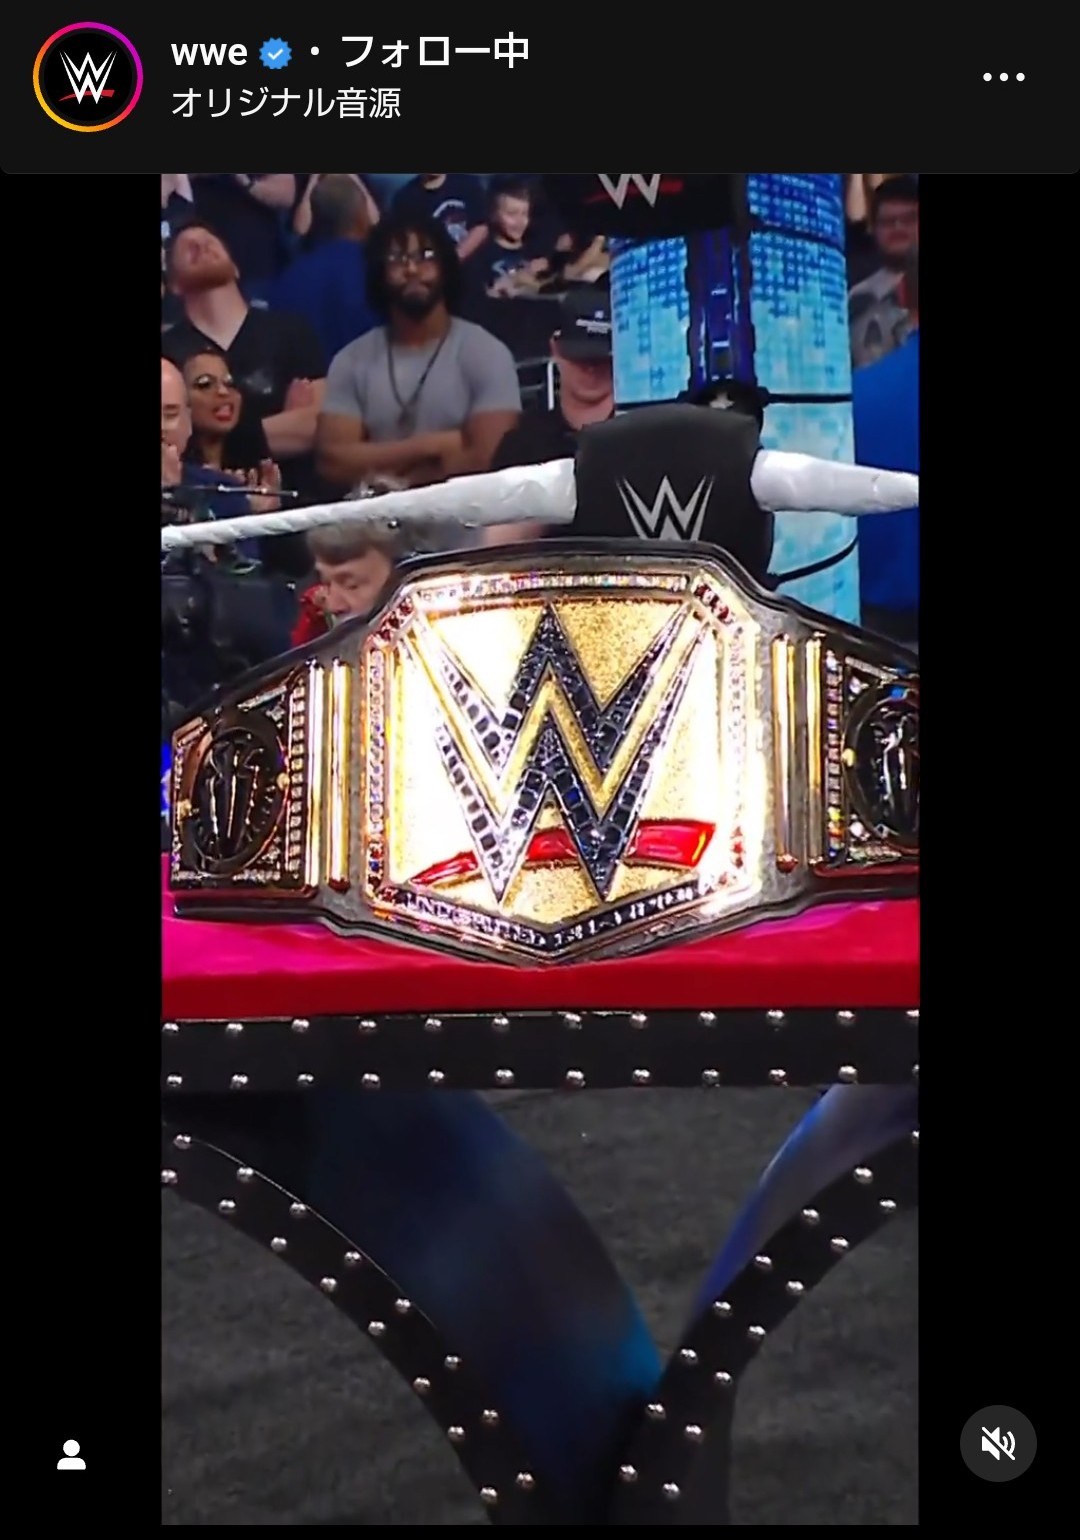 お披露目された新たなWWEヘビー級、ユニバーサル統一王座ベルト。デザインは2本のベルトと変更なしもセンターがゴールド（WWE公式インスタグラムから）